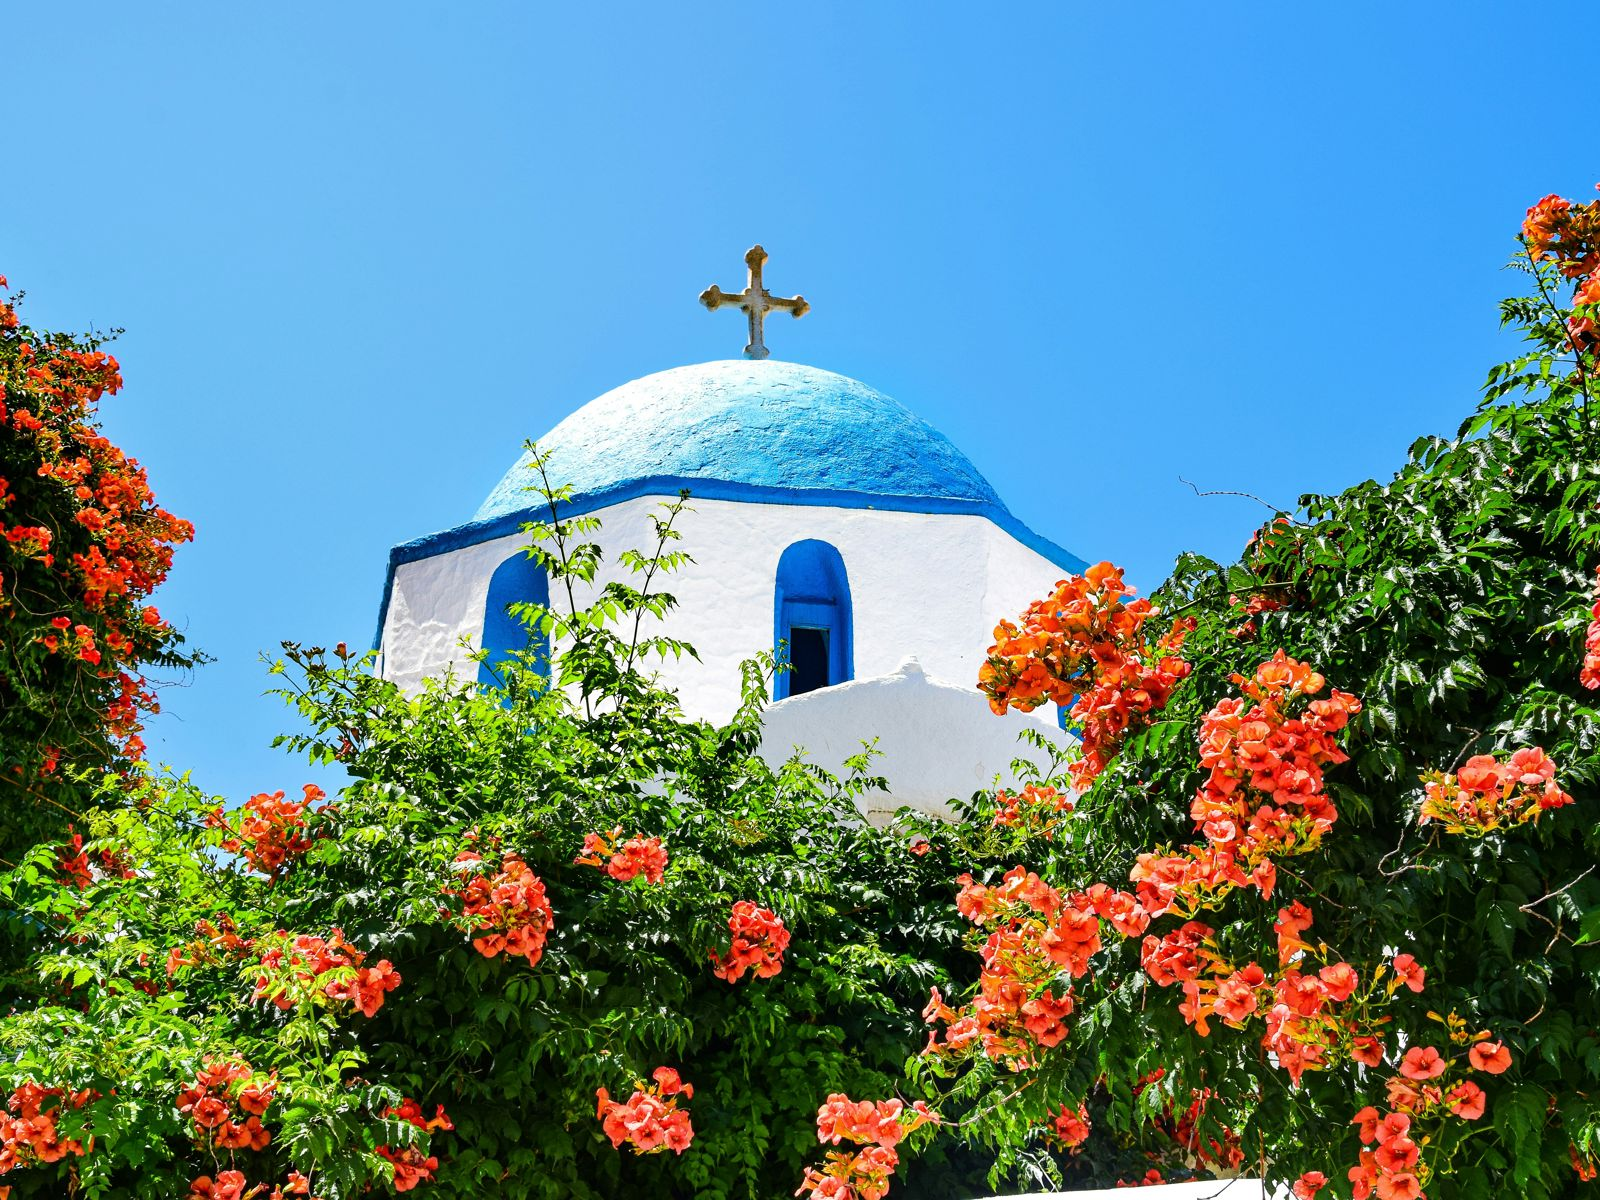 Gresk kirketårn med blått tak omgitt av grøntområder og vakre blomster